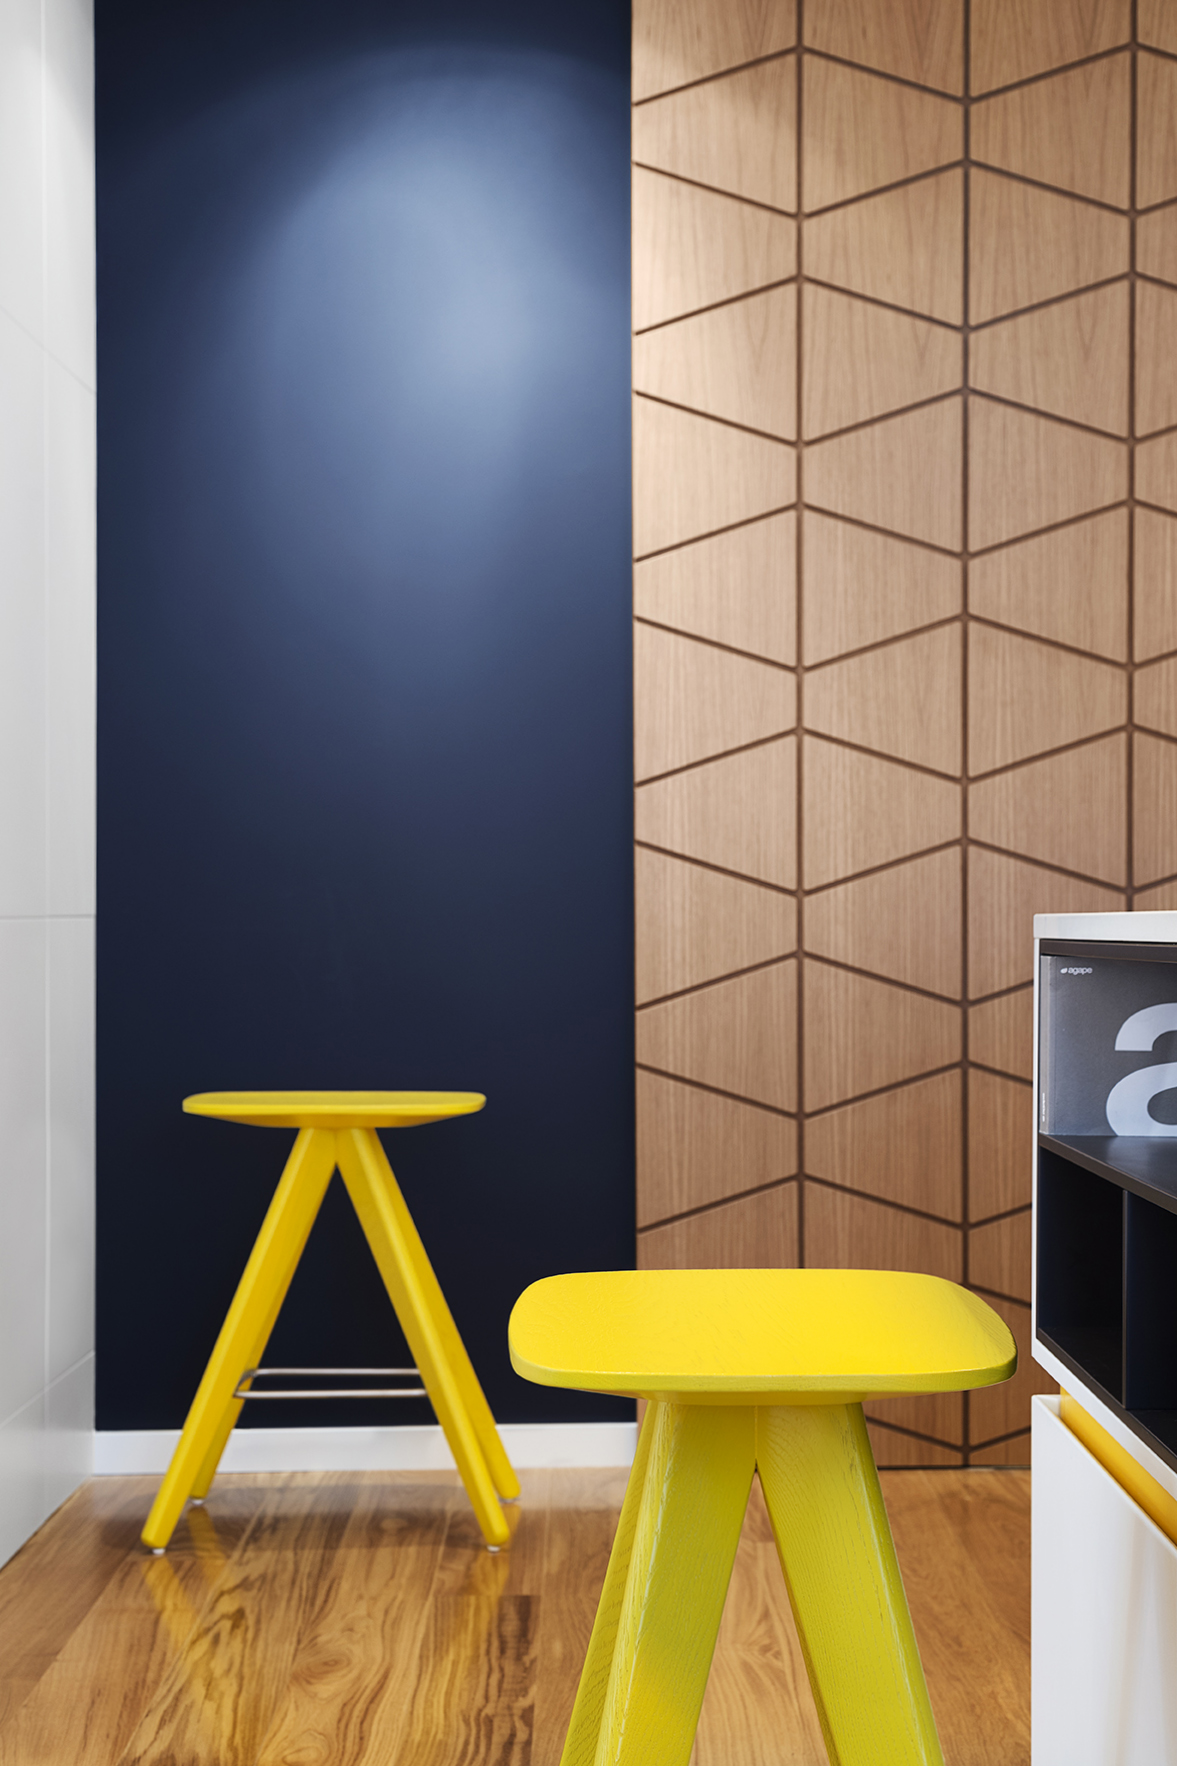 Furniture in small apartment by Fimera Design Studio